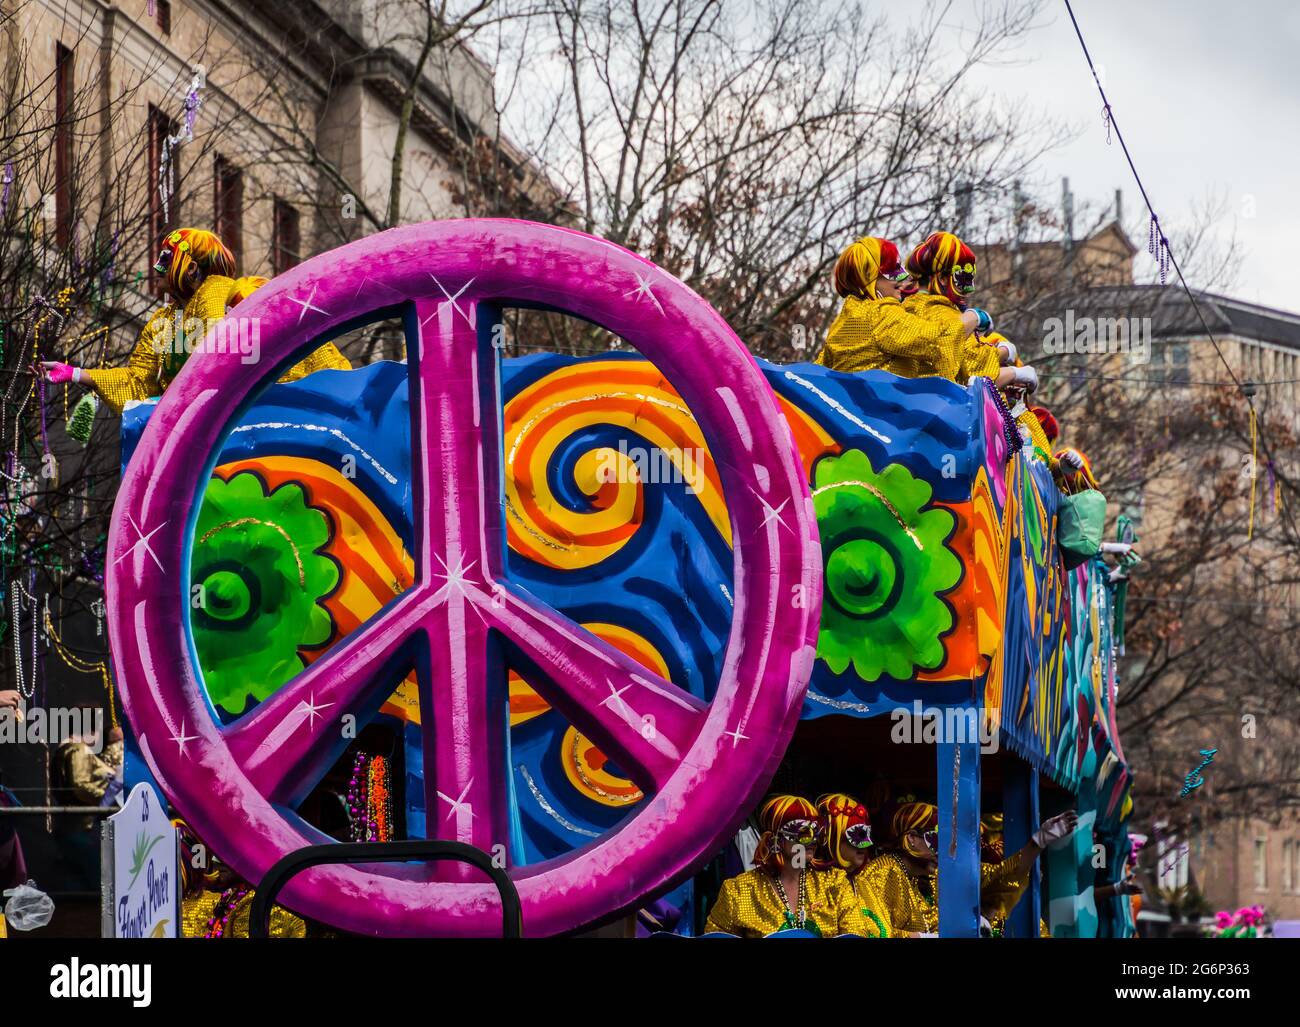 Parade Float in The Mardi Gras Parade, New Orleans, Louisiana, USA Stock Photo